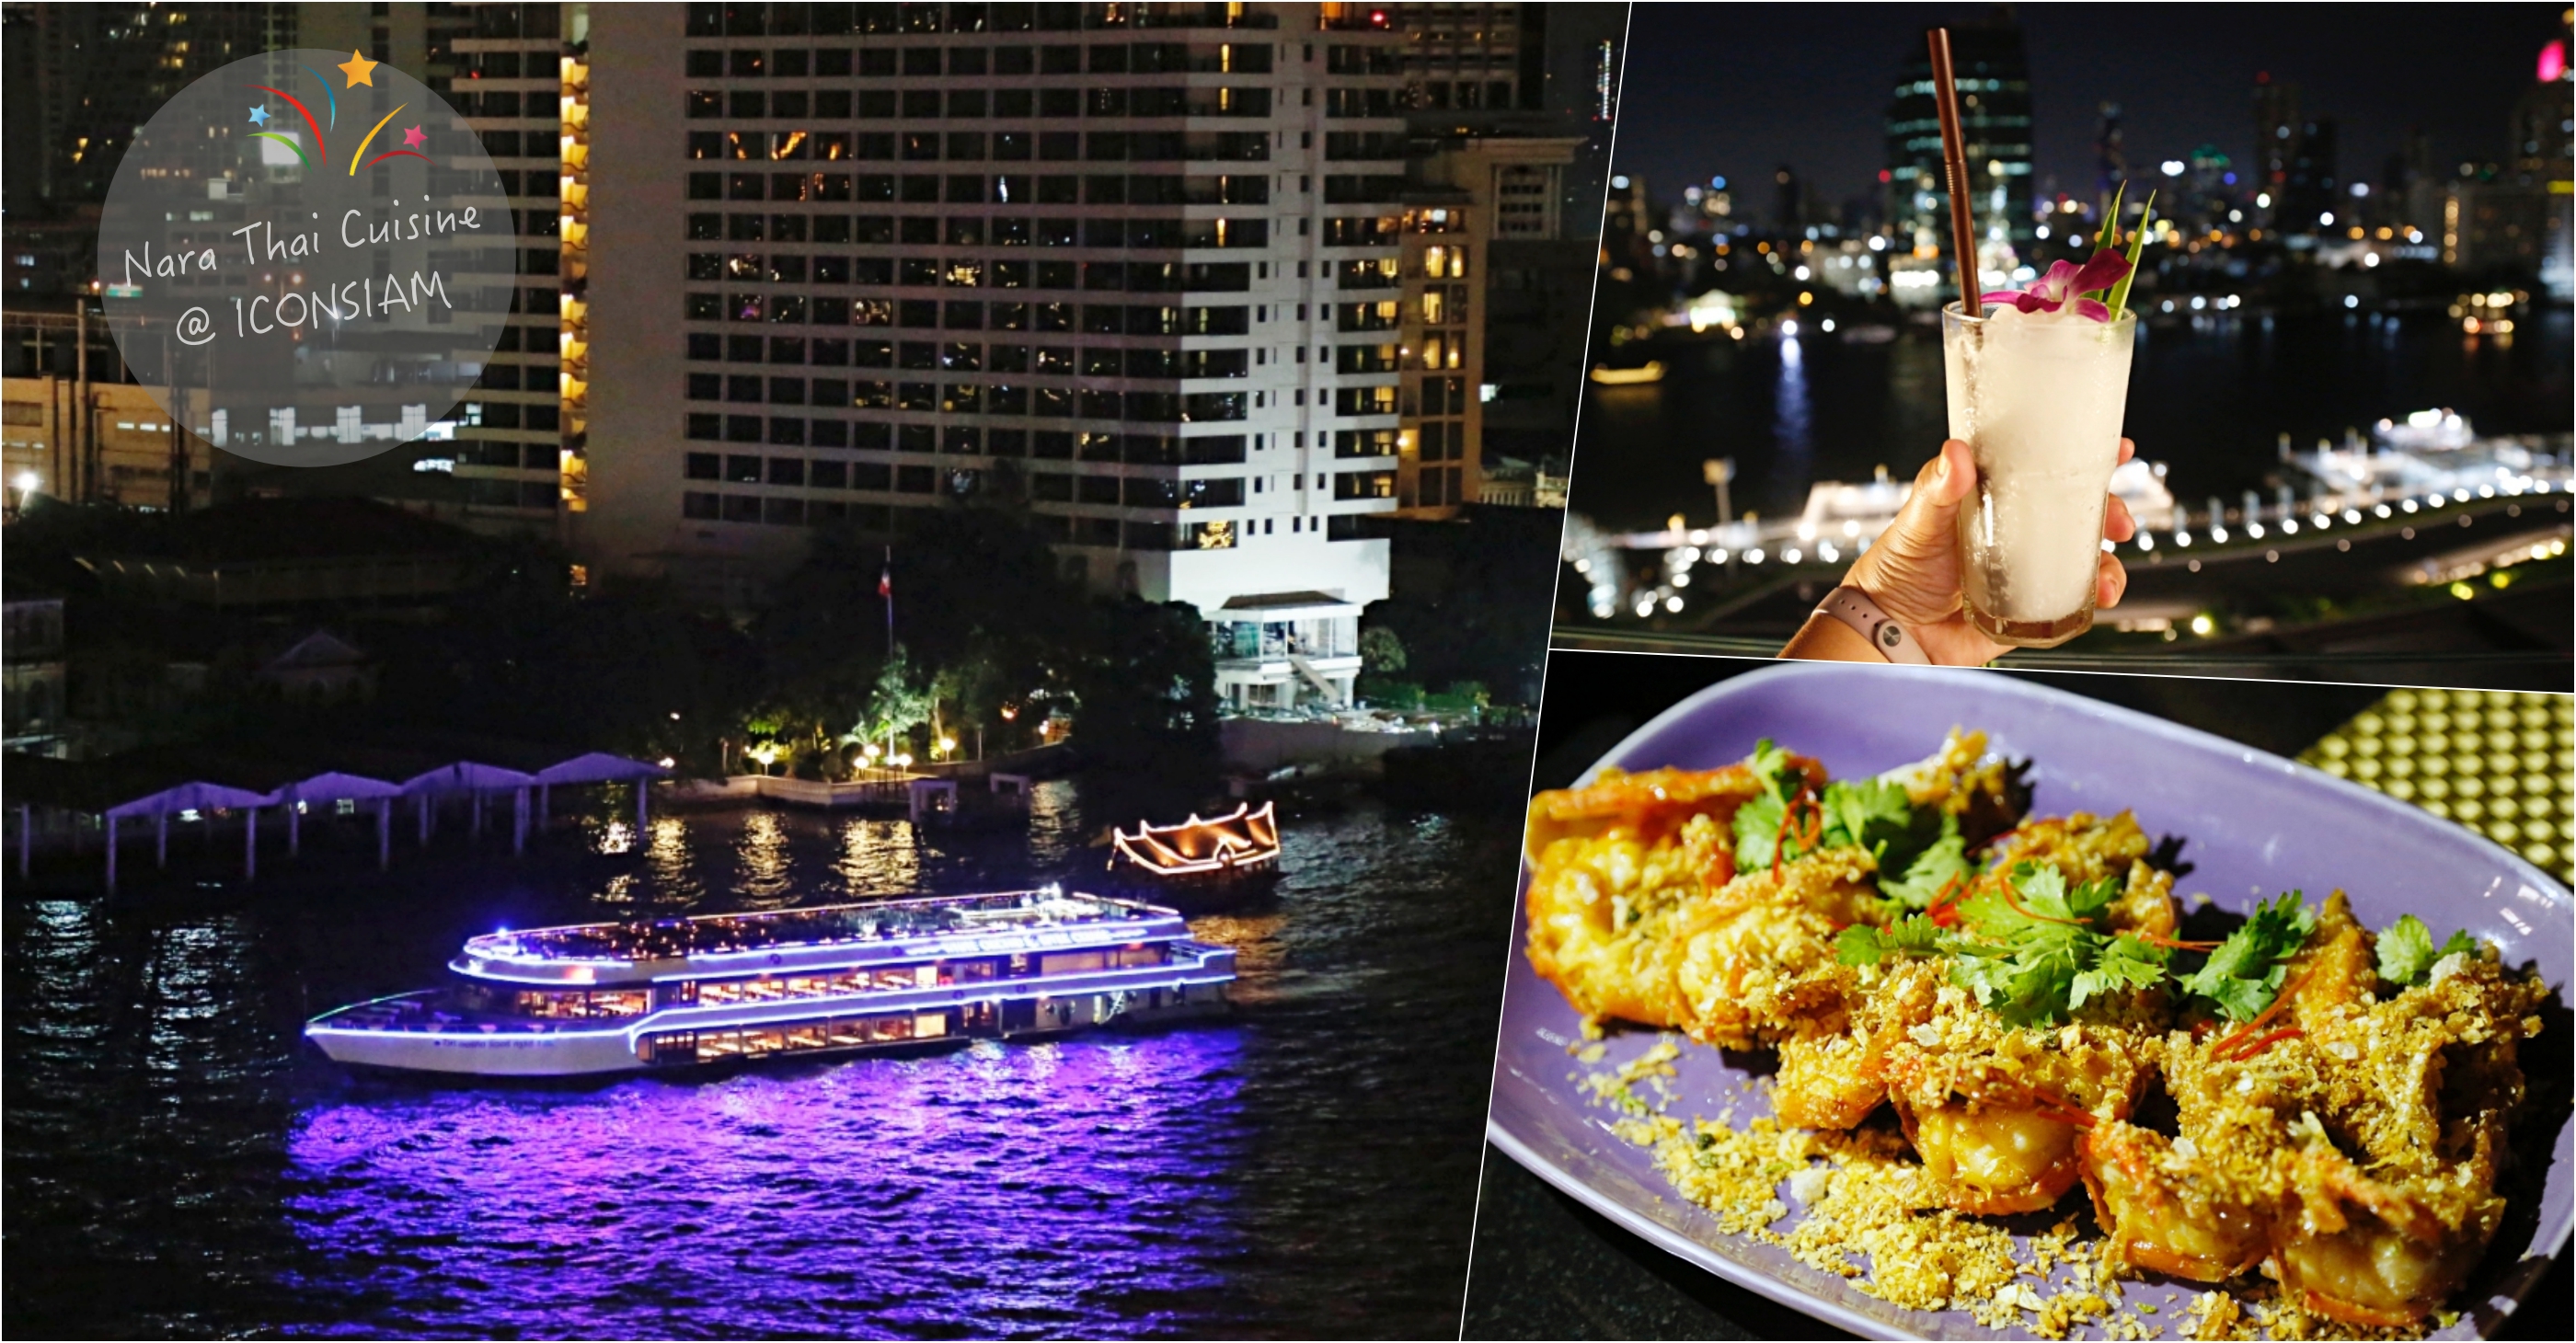 延伸閱讀：[曼谷美食]Nara Thai Cuisine |泰國最新商場ICONSIAM5樓用餐區~欣賞河岸風光夜景氣氛佳